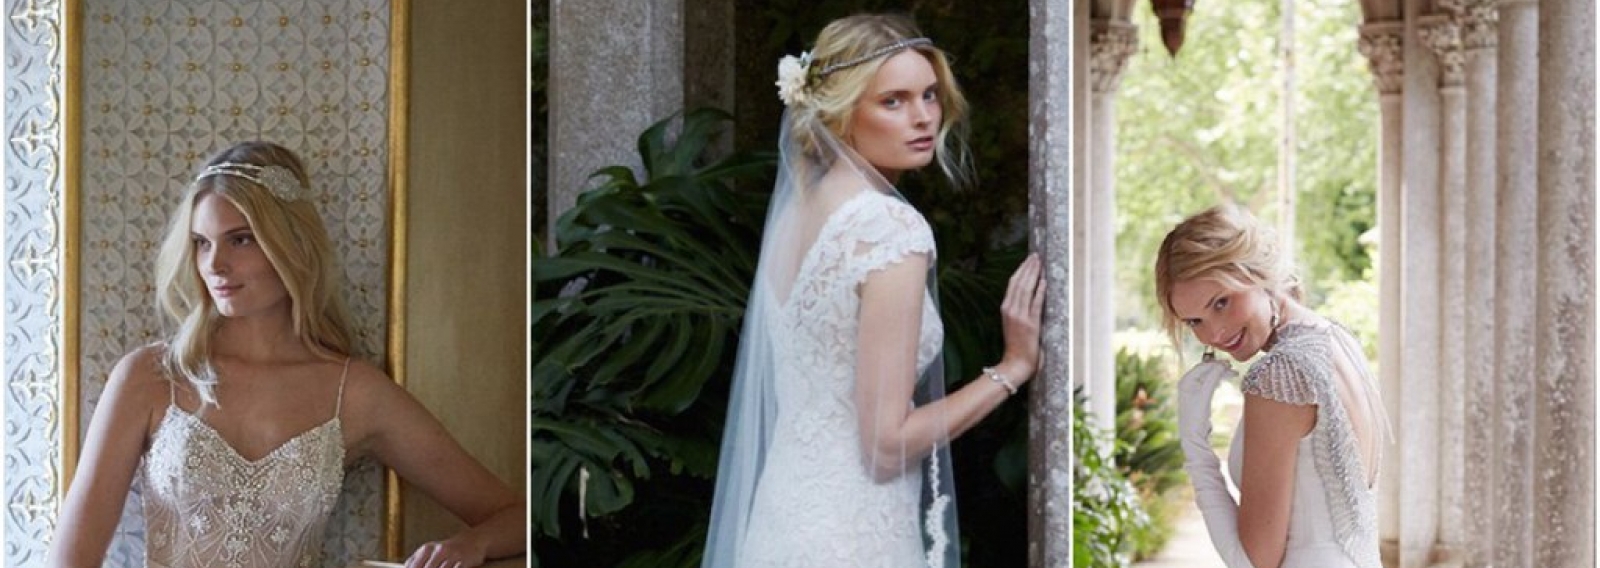 Свадебное платье недели: lookbook коллекции BHLDN Wedding Dresses Fall 2015, "Twice Enchanted"